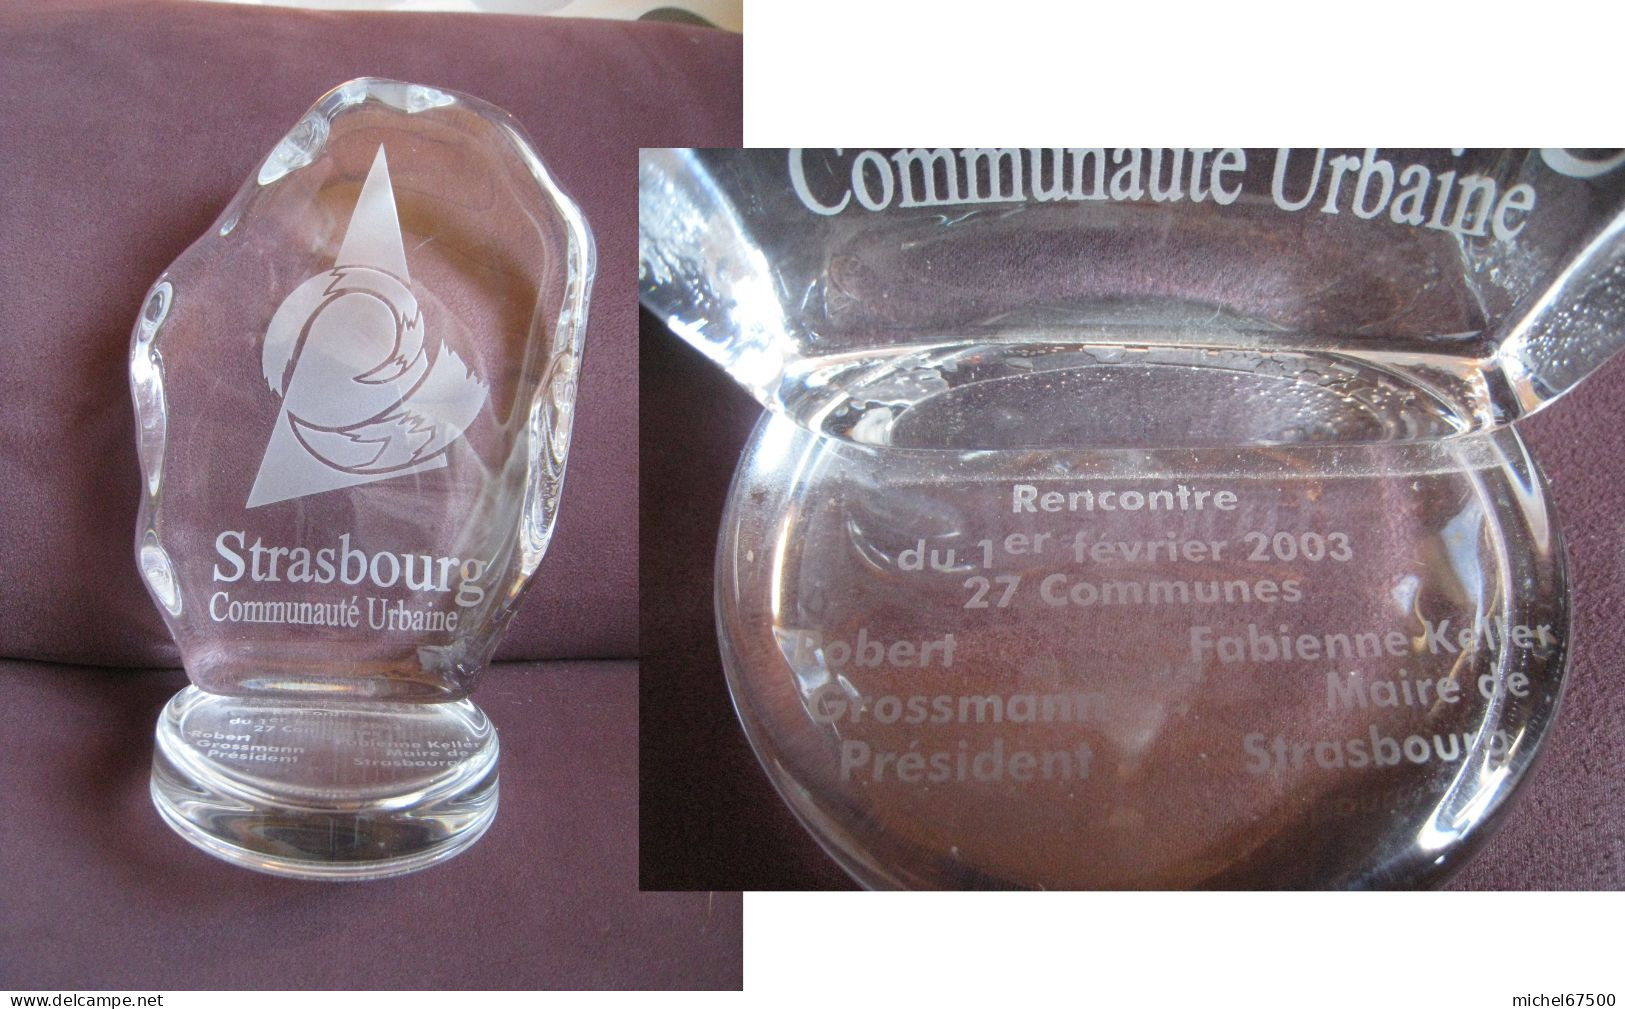 STRASBOURG Communauté Urbaine Objet Commémoratif  Rencontre Du 1er Février 2003 27 Communes - Obj. 'Remember Of'